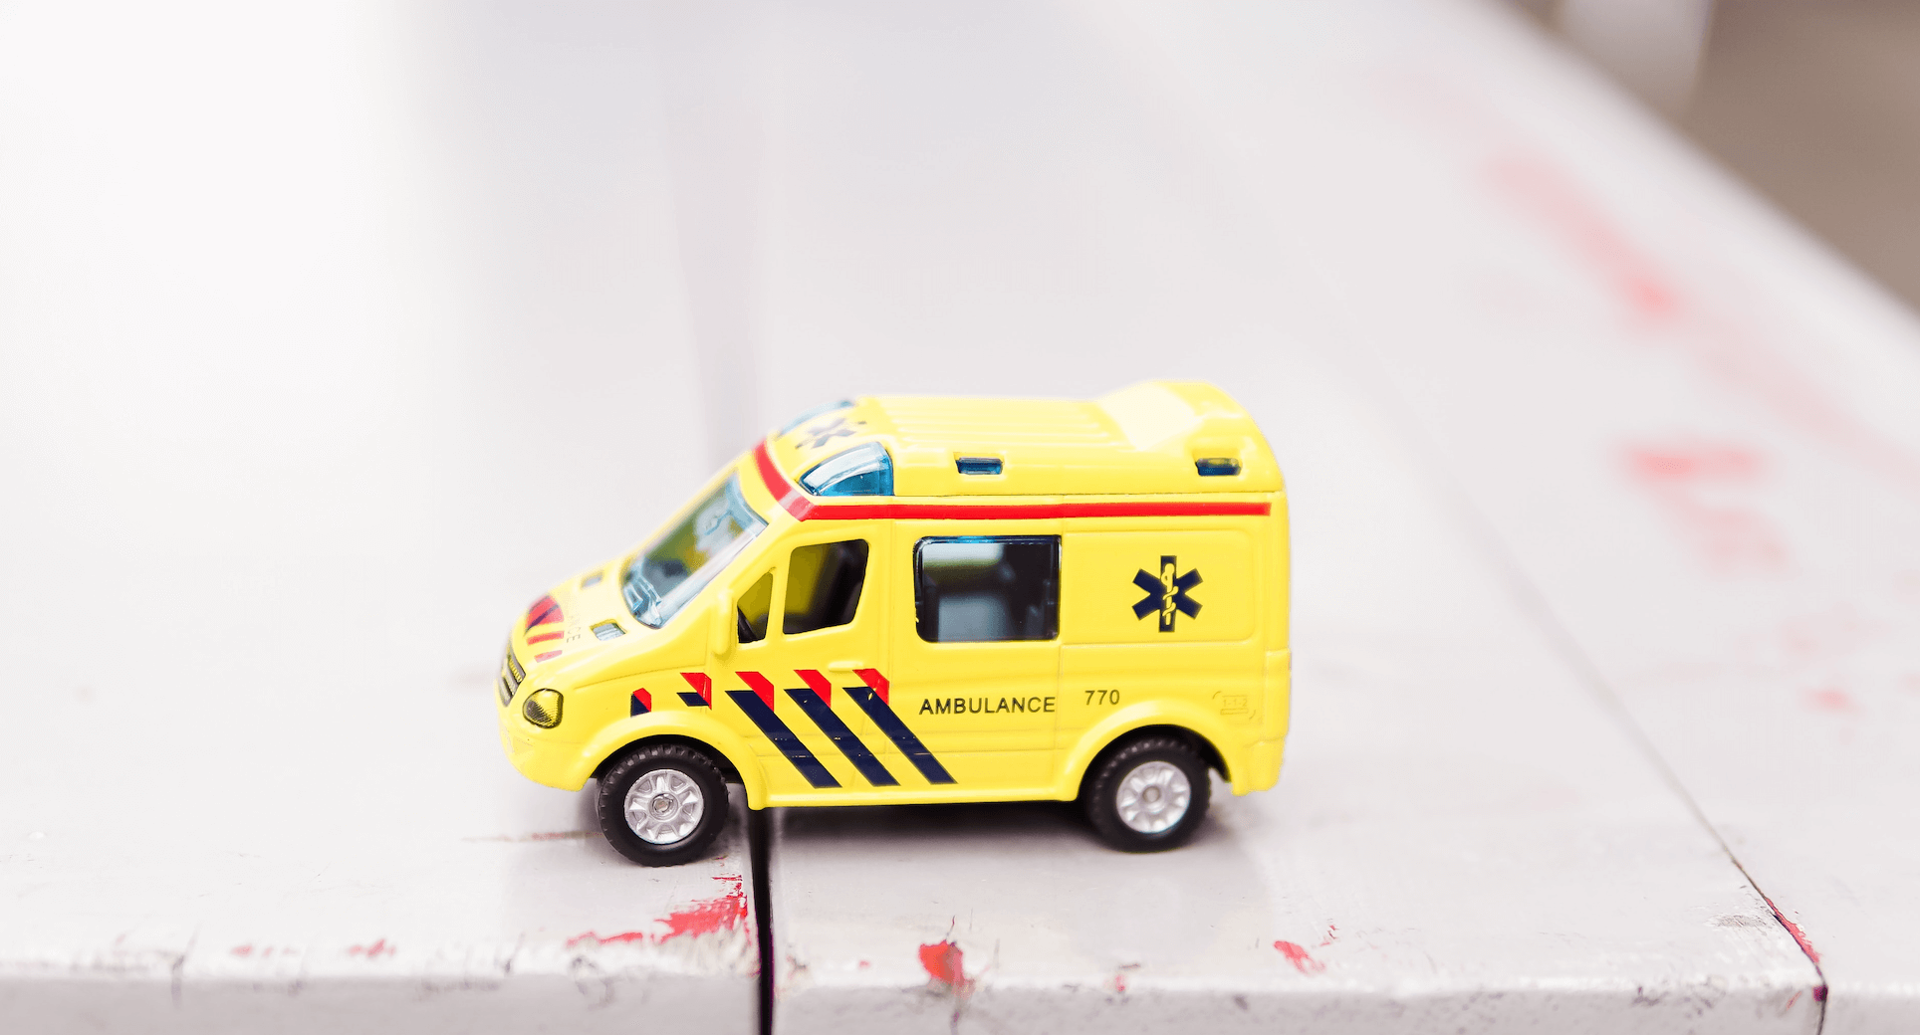 Spiezeug-Krankenwagen auf einem Holztisch.